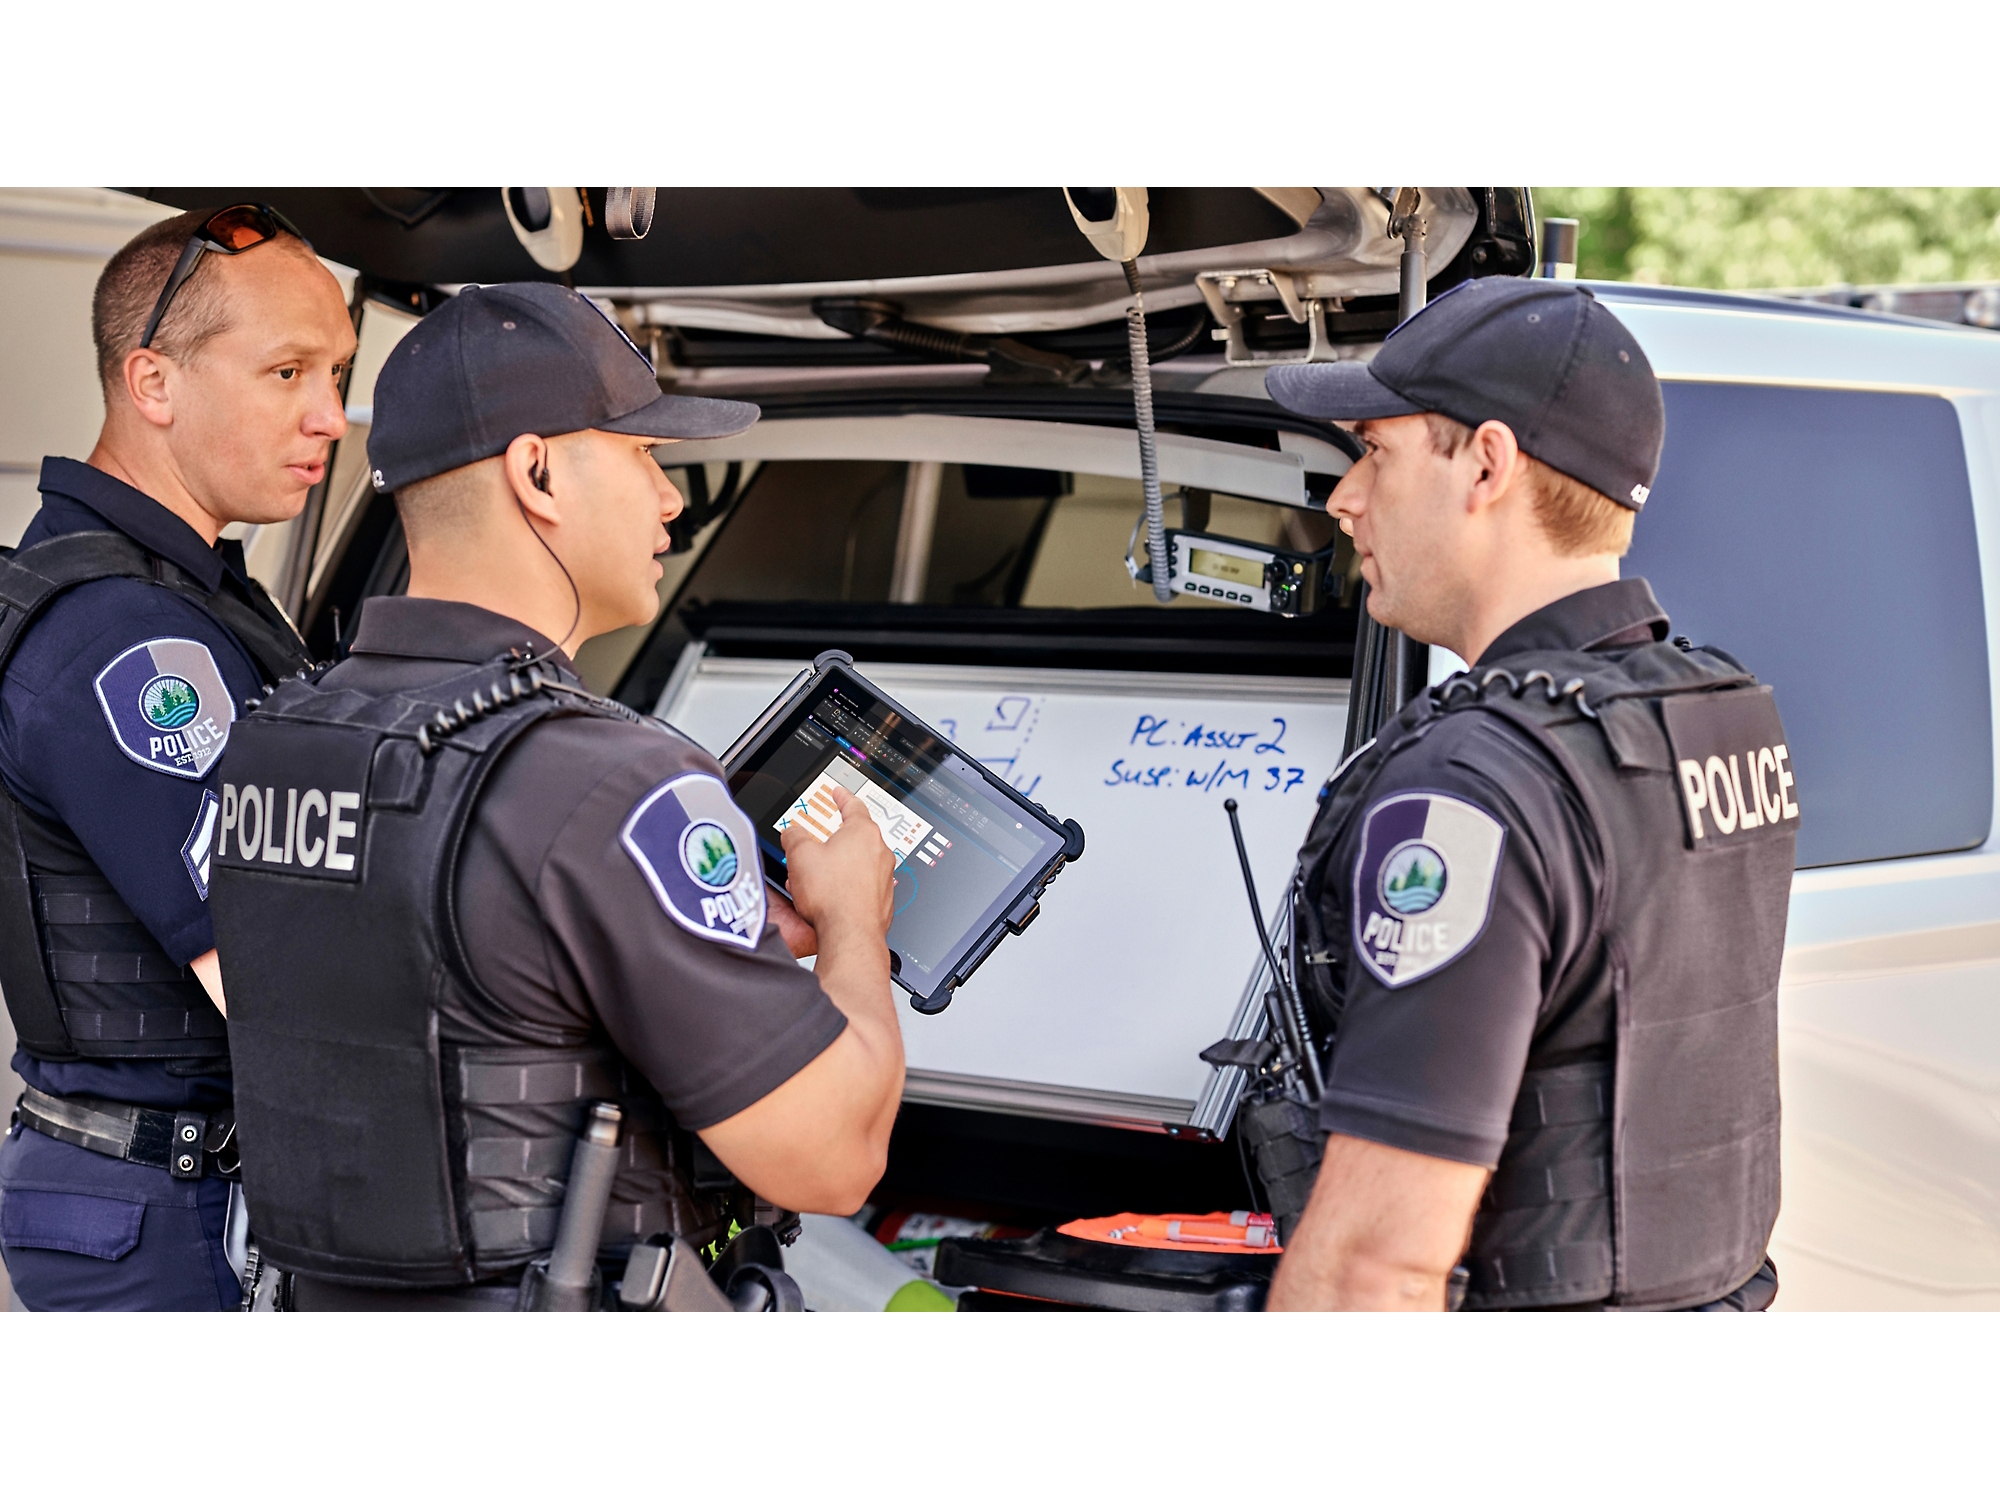 Kolme poliisia tarkistaa tietoja digitaalisella tabletilla, joka on partioauton vieressä takaluukku auki